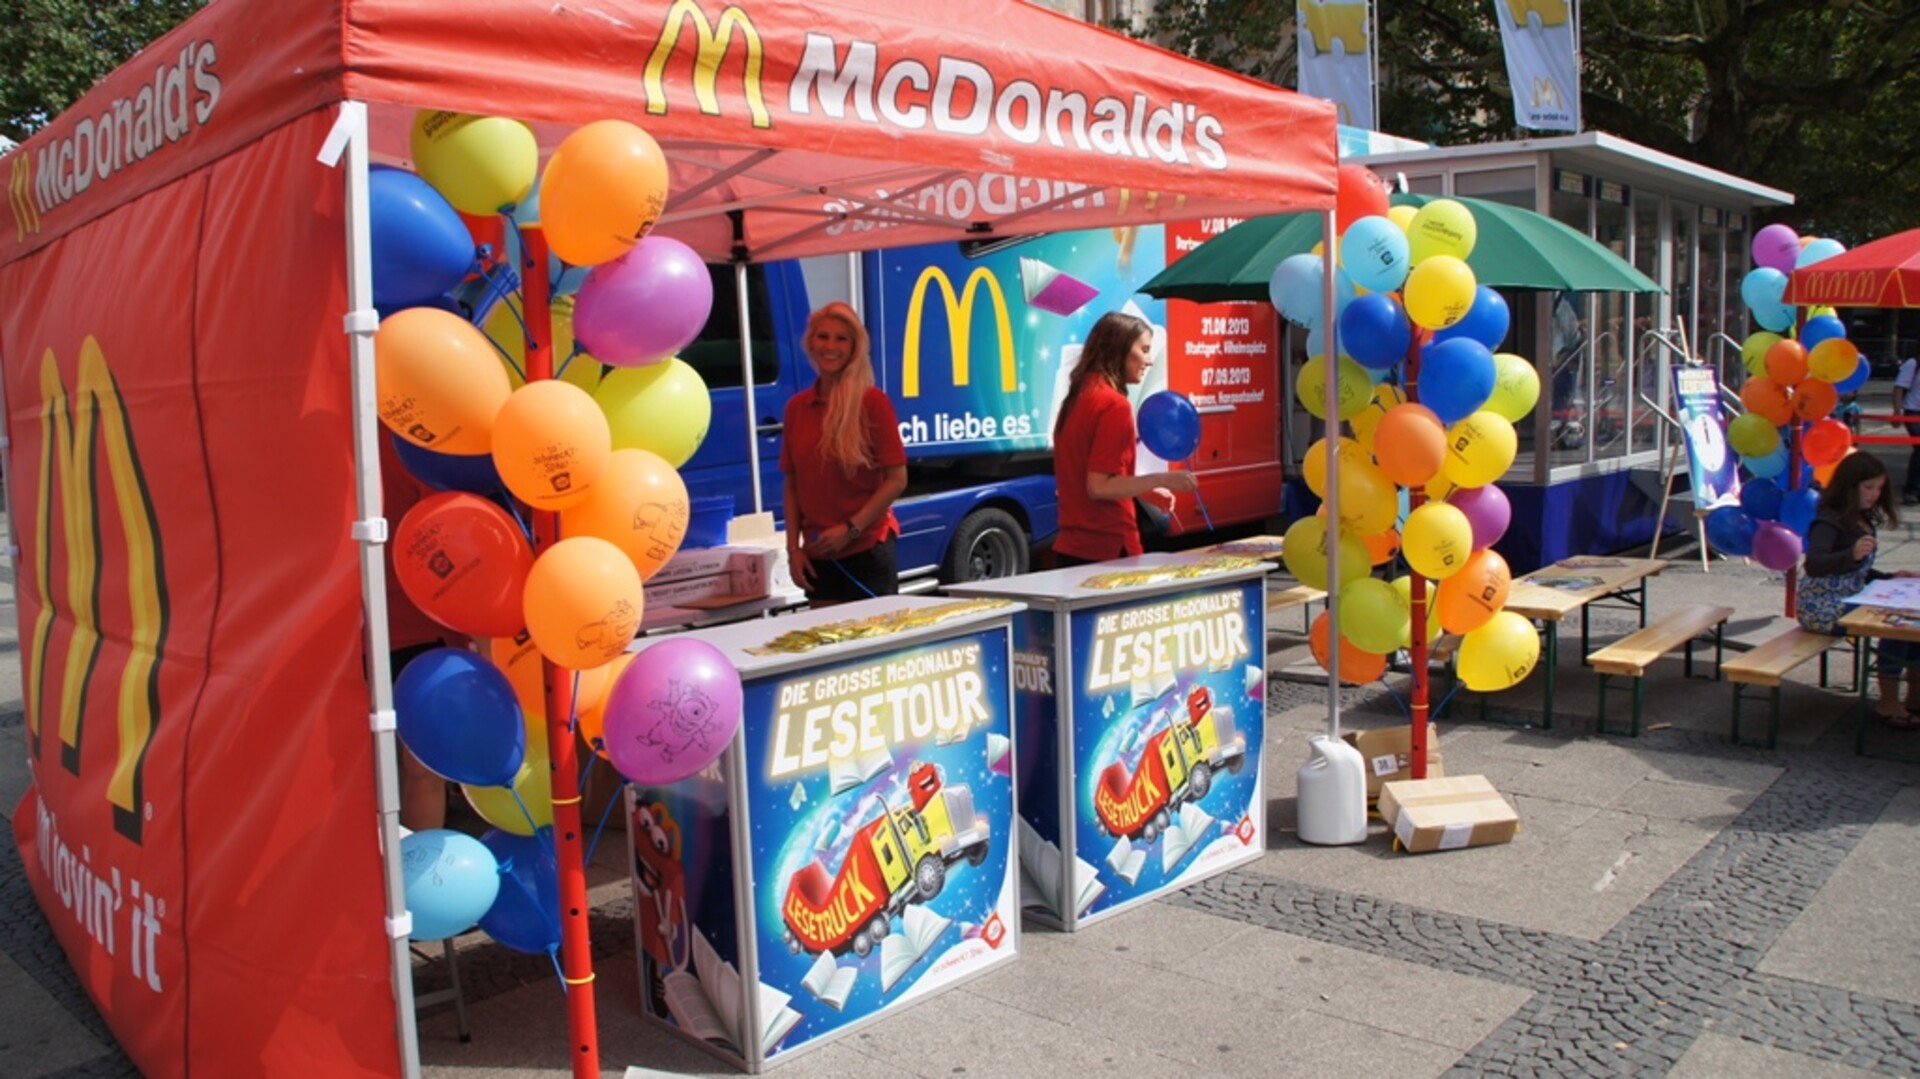 McDonalds_Lesetour_Dortmund1.JPG